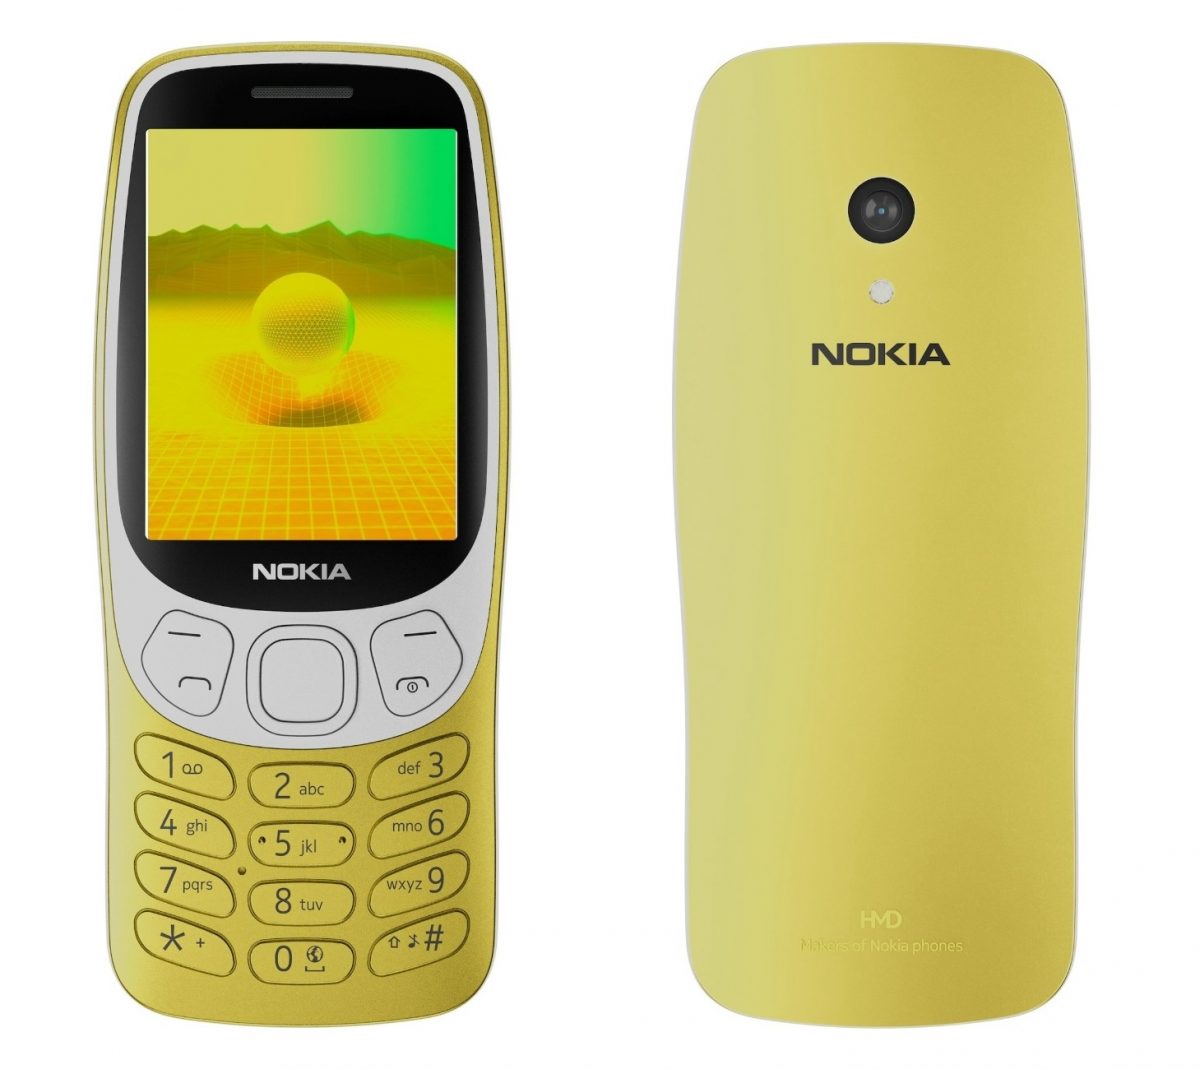 Uusi Nokia 3210 keltaisena kultavärinä.